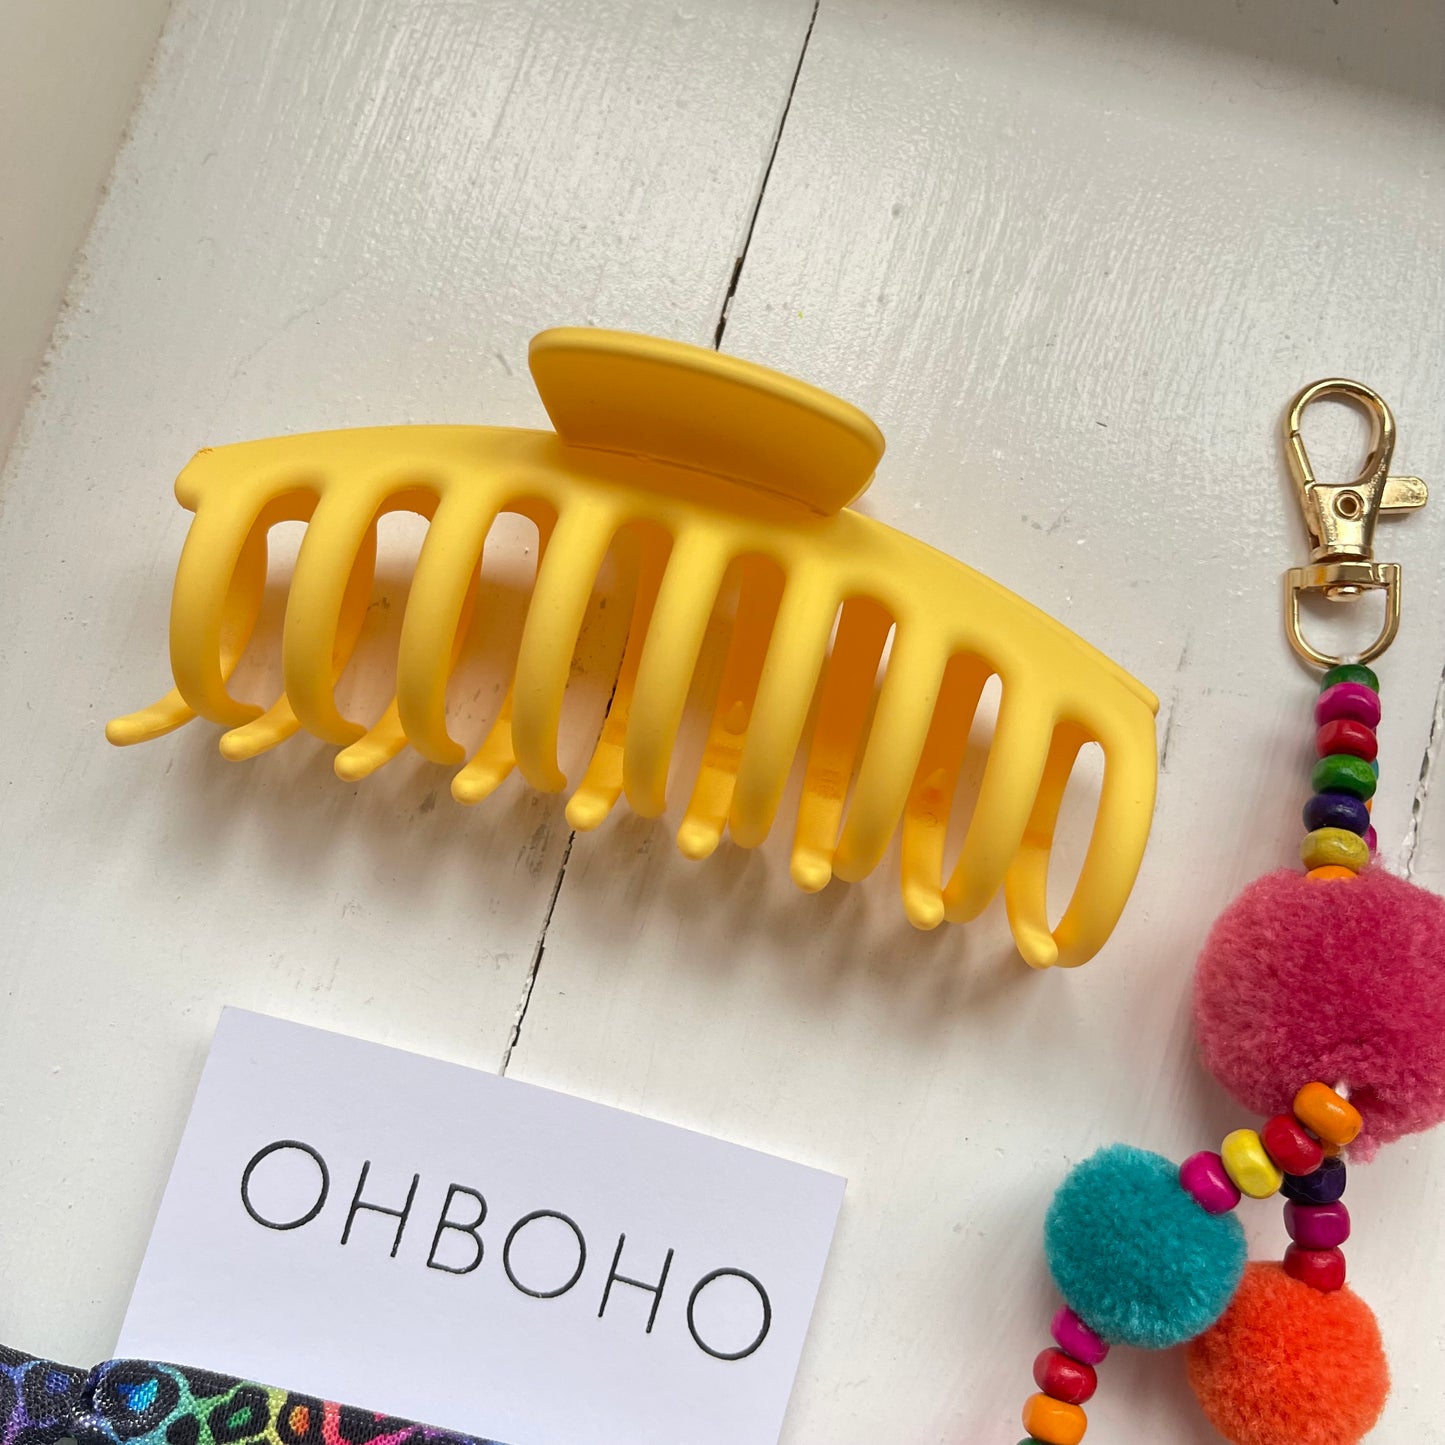 OHBOHO Sunshine Gift Box